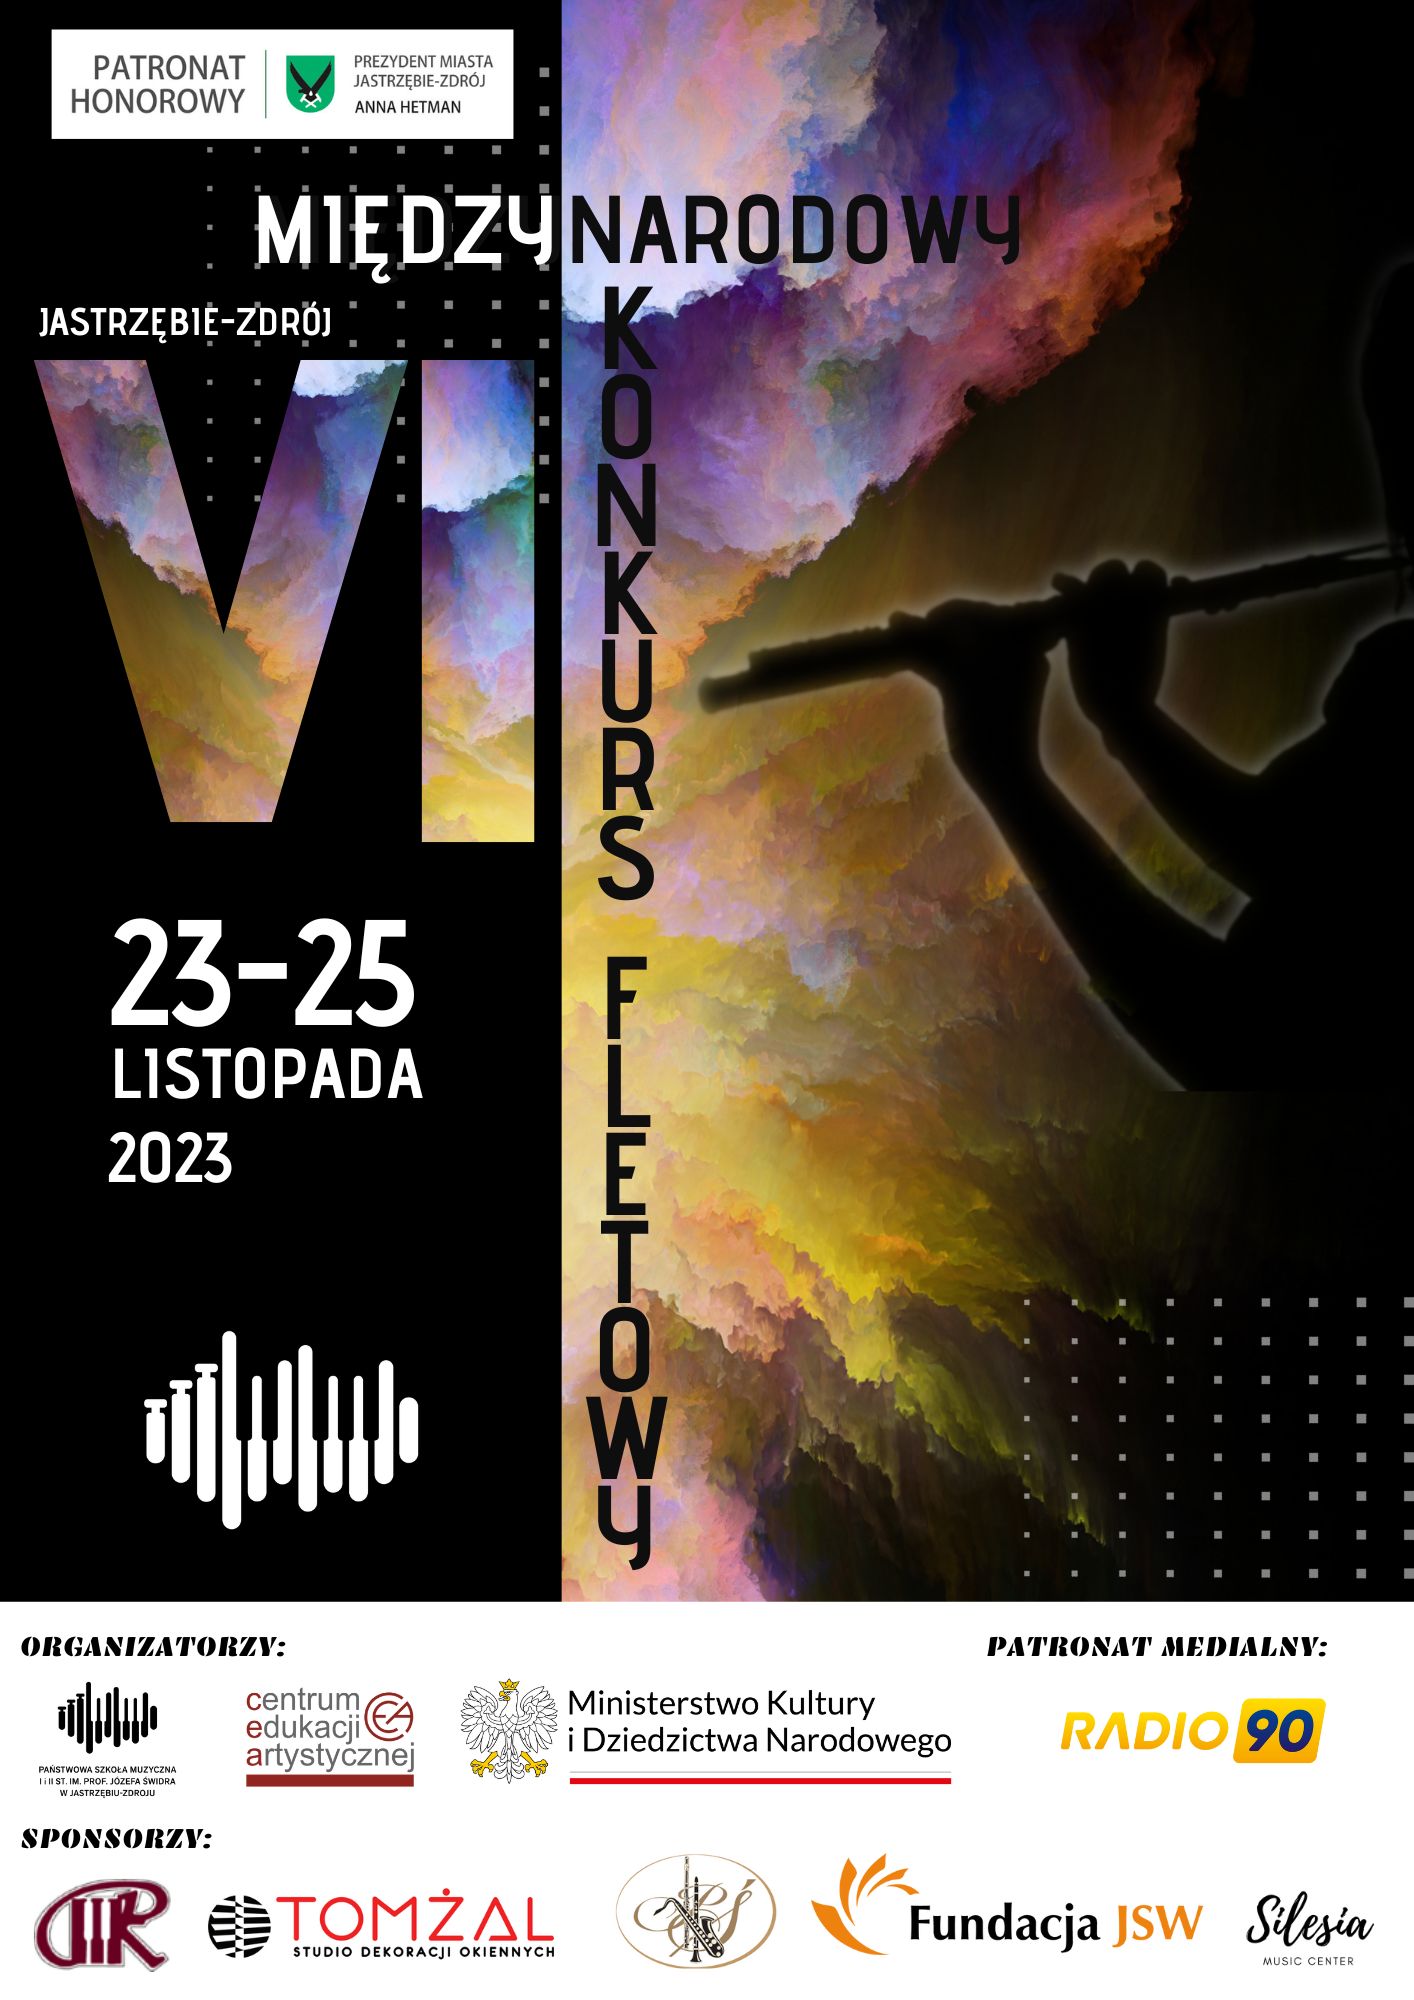 Plakat informujący o Międzynarodowym konkursie fletowym, który odbędzie się 23-25 listopada 2023. Plakat przedstawia zarys postaci grającej na flecie